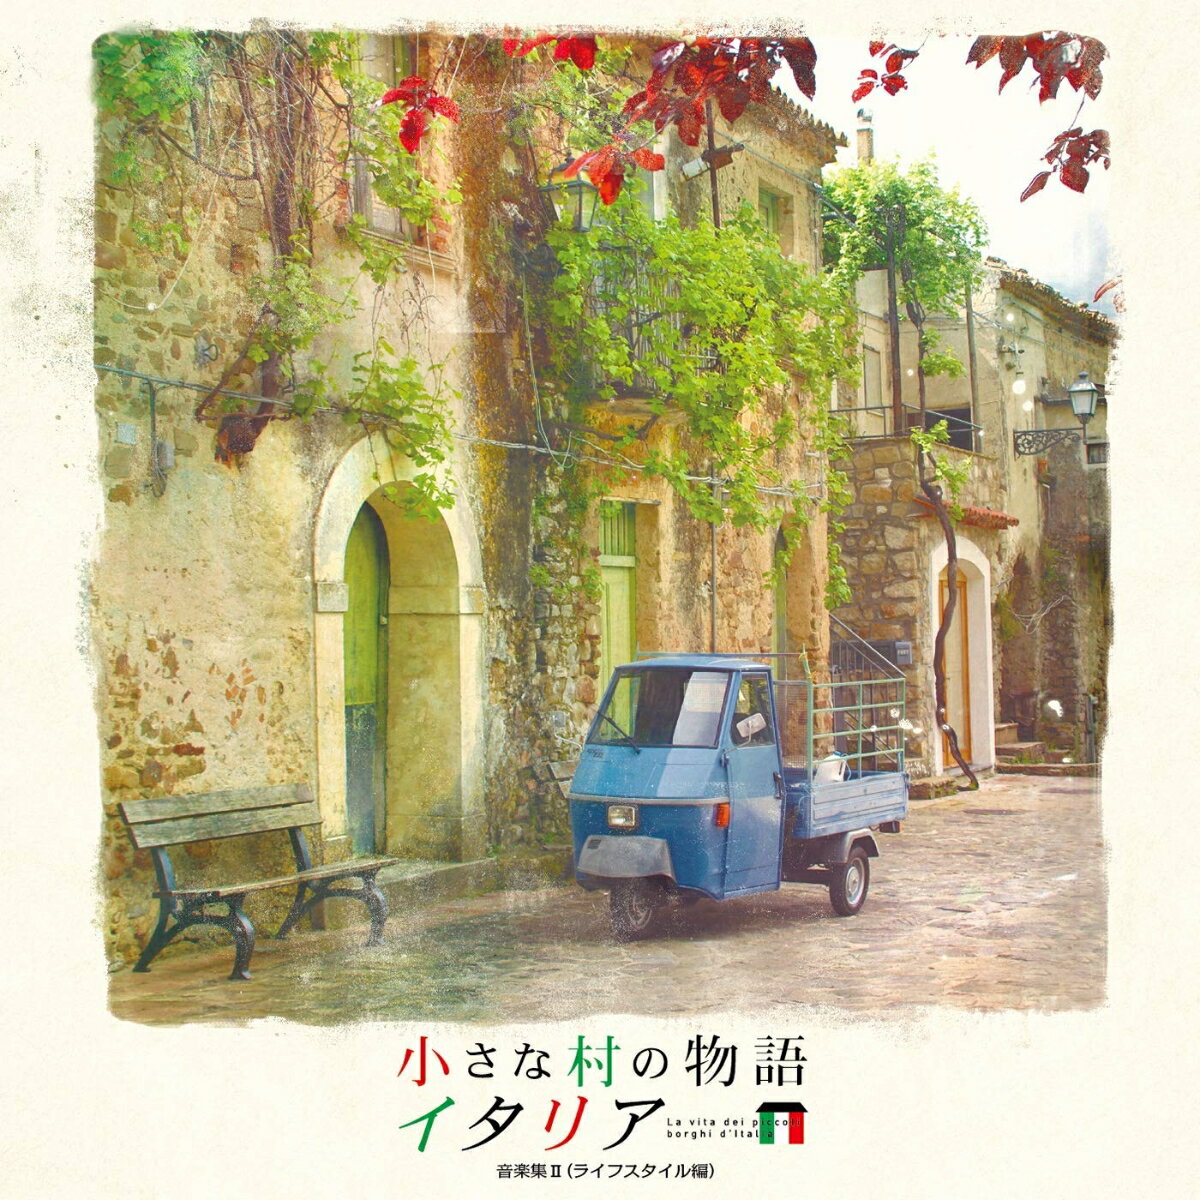 小さな村の物語 イタリア 音楽集Vol.2 (ライフスタイル編)